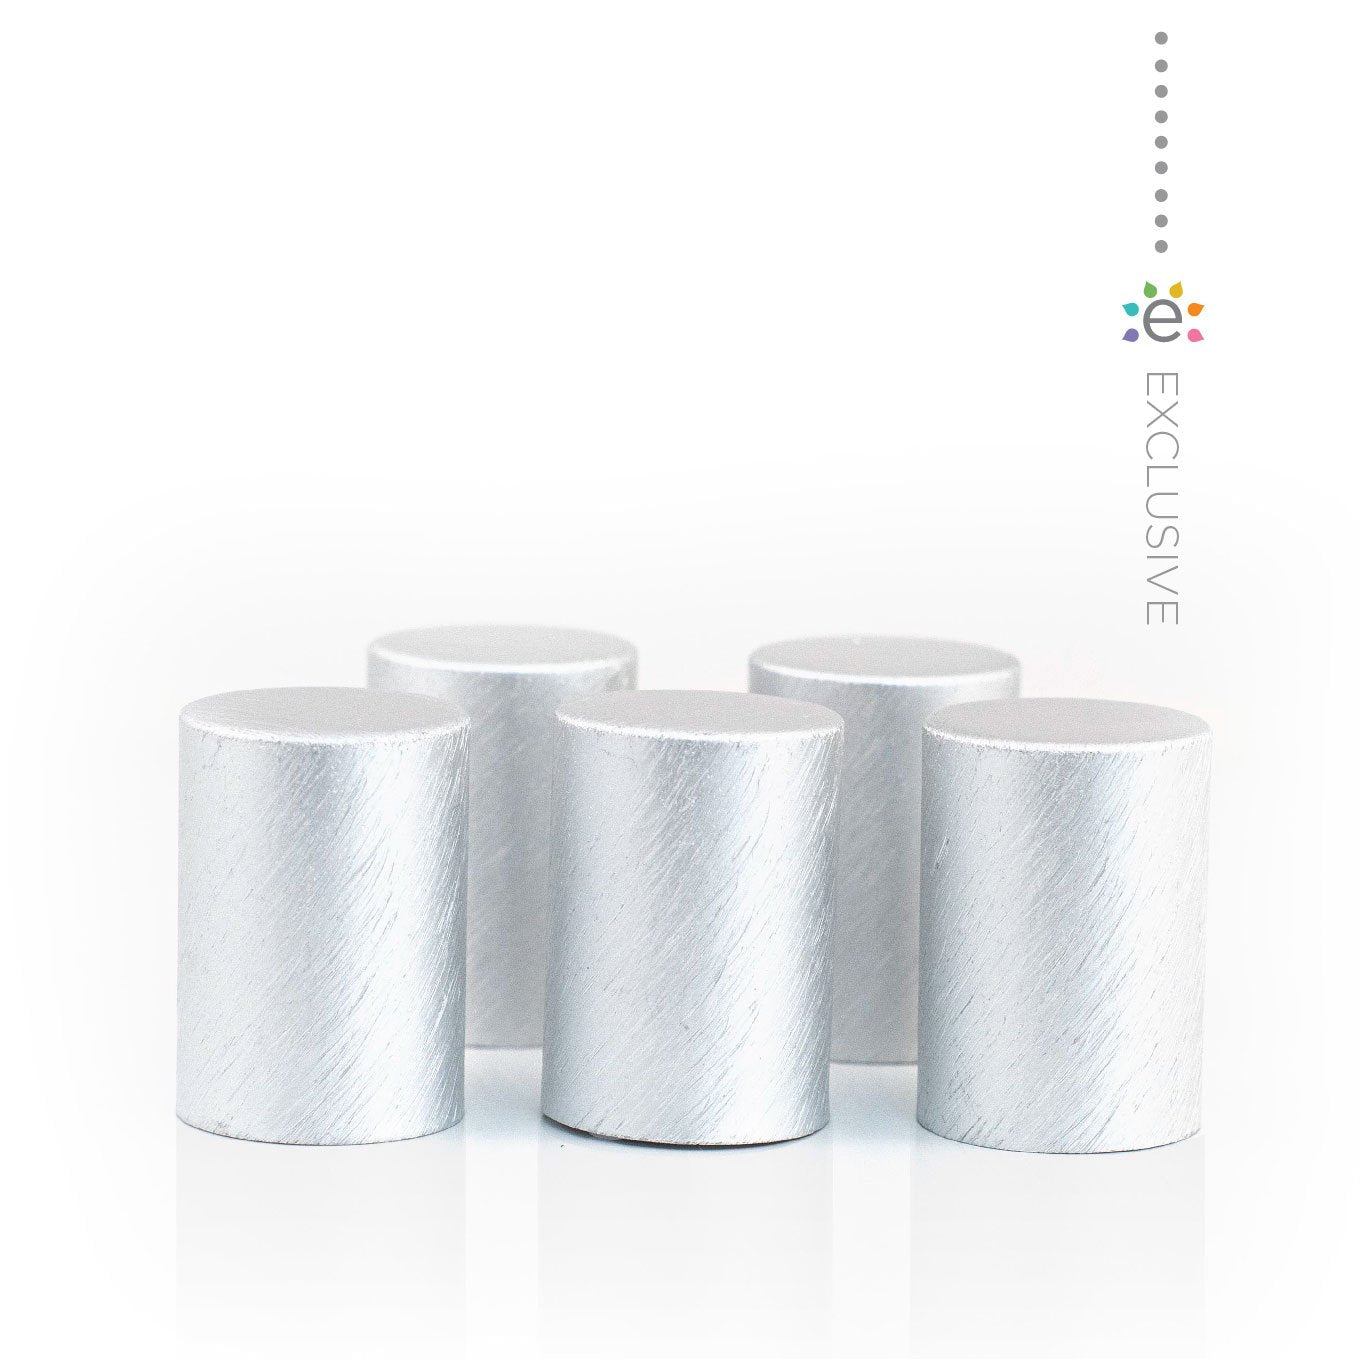 Fém kupakok (5 darab) Roll-on üveghengerhez, Ón/Ezüst színben